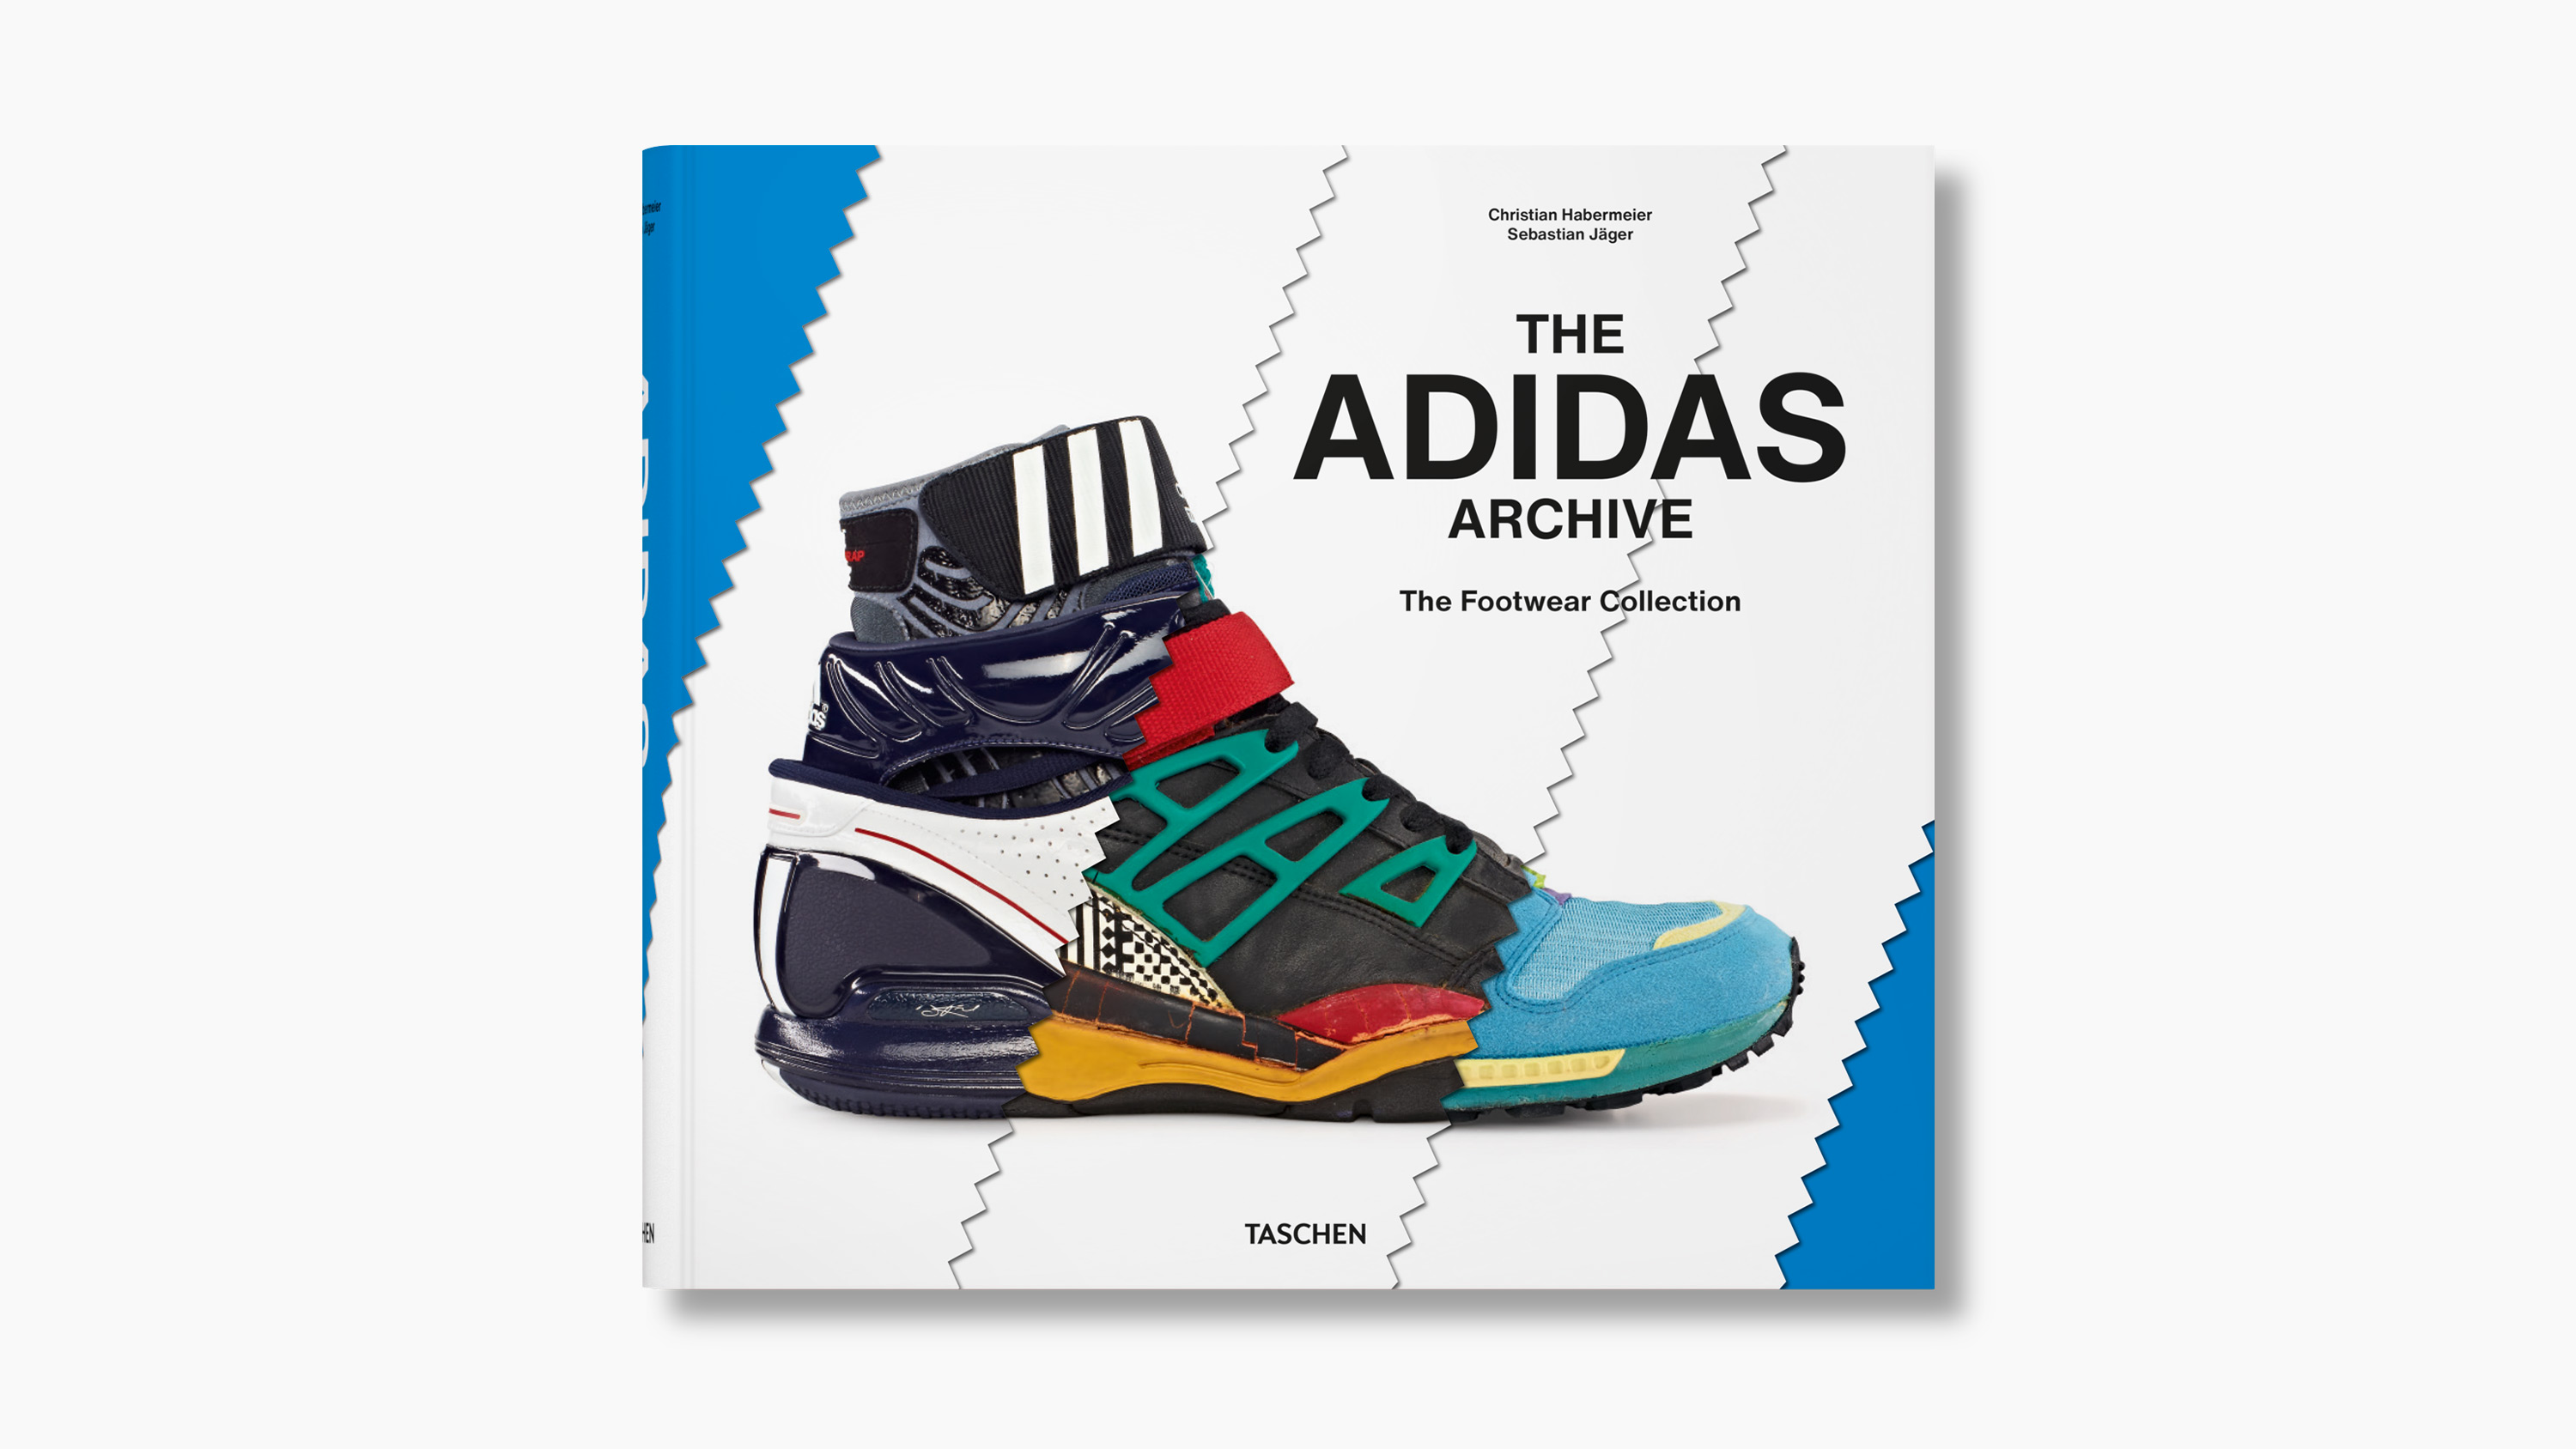 ‘The adidas Archive’ by Christian Habermeier & Sebastian Jäger